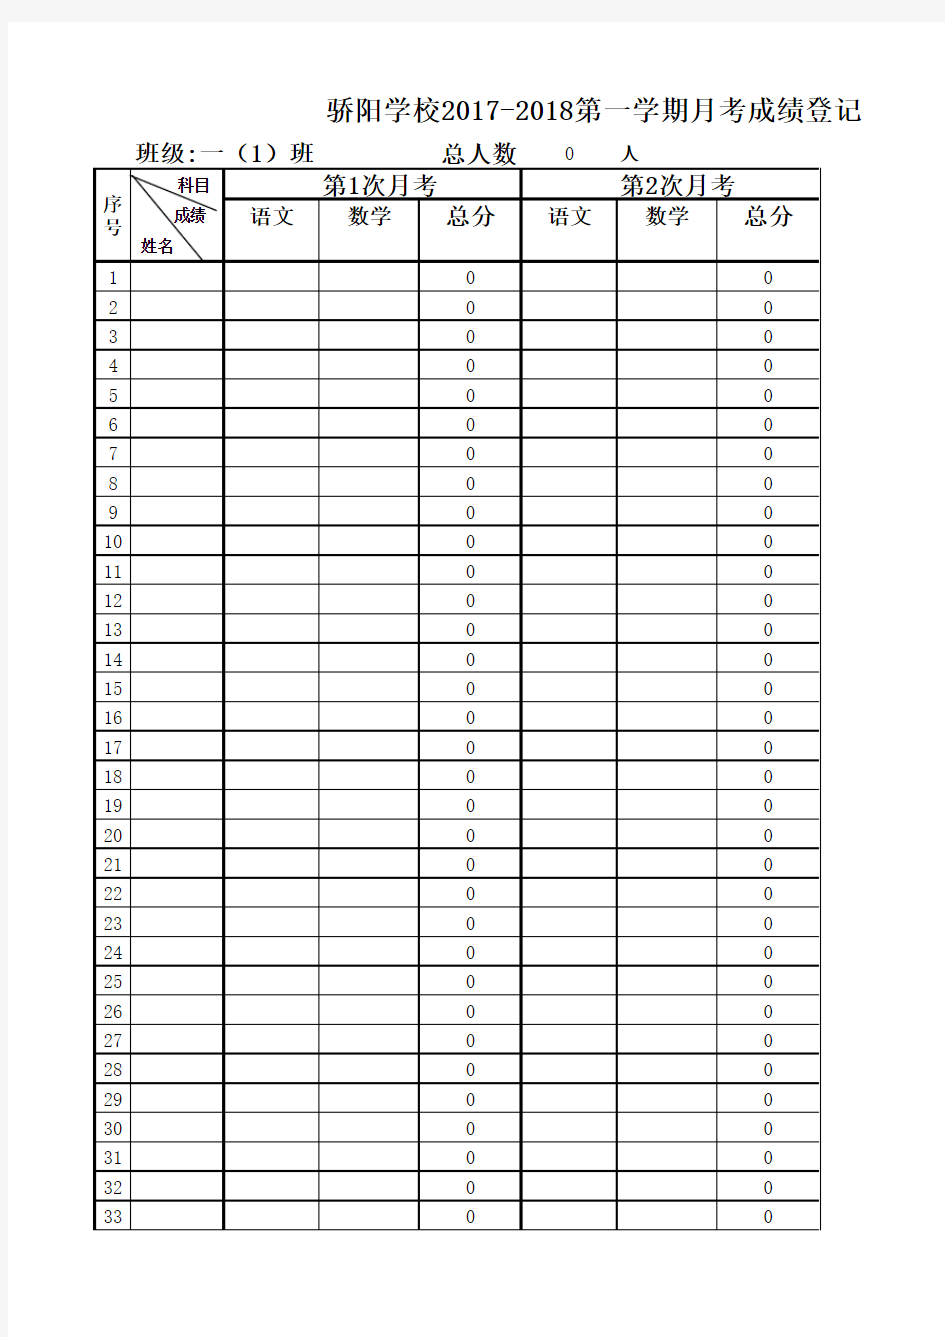 学校月考成绩登记表(含统计计算公式)